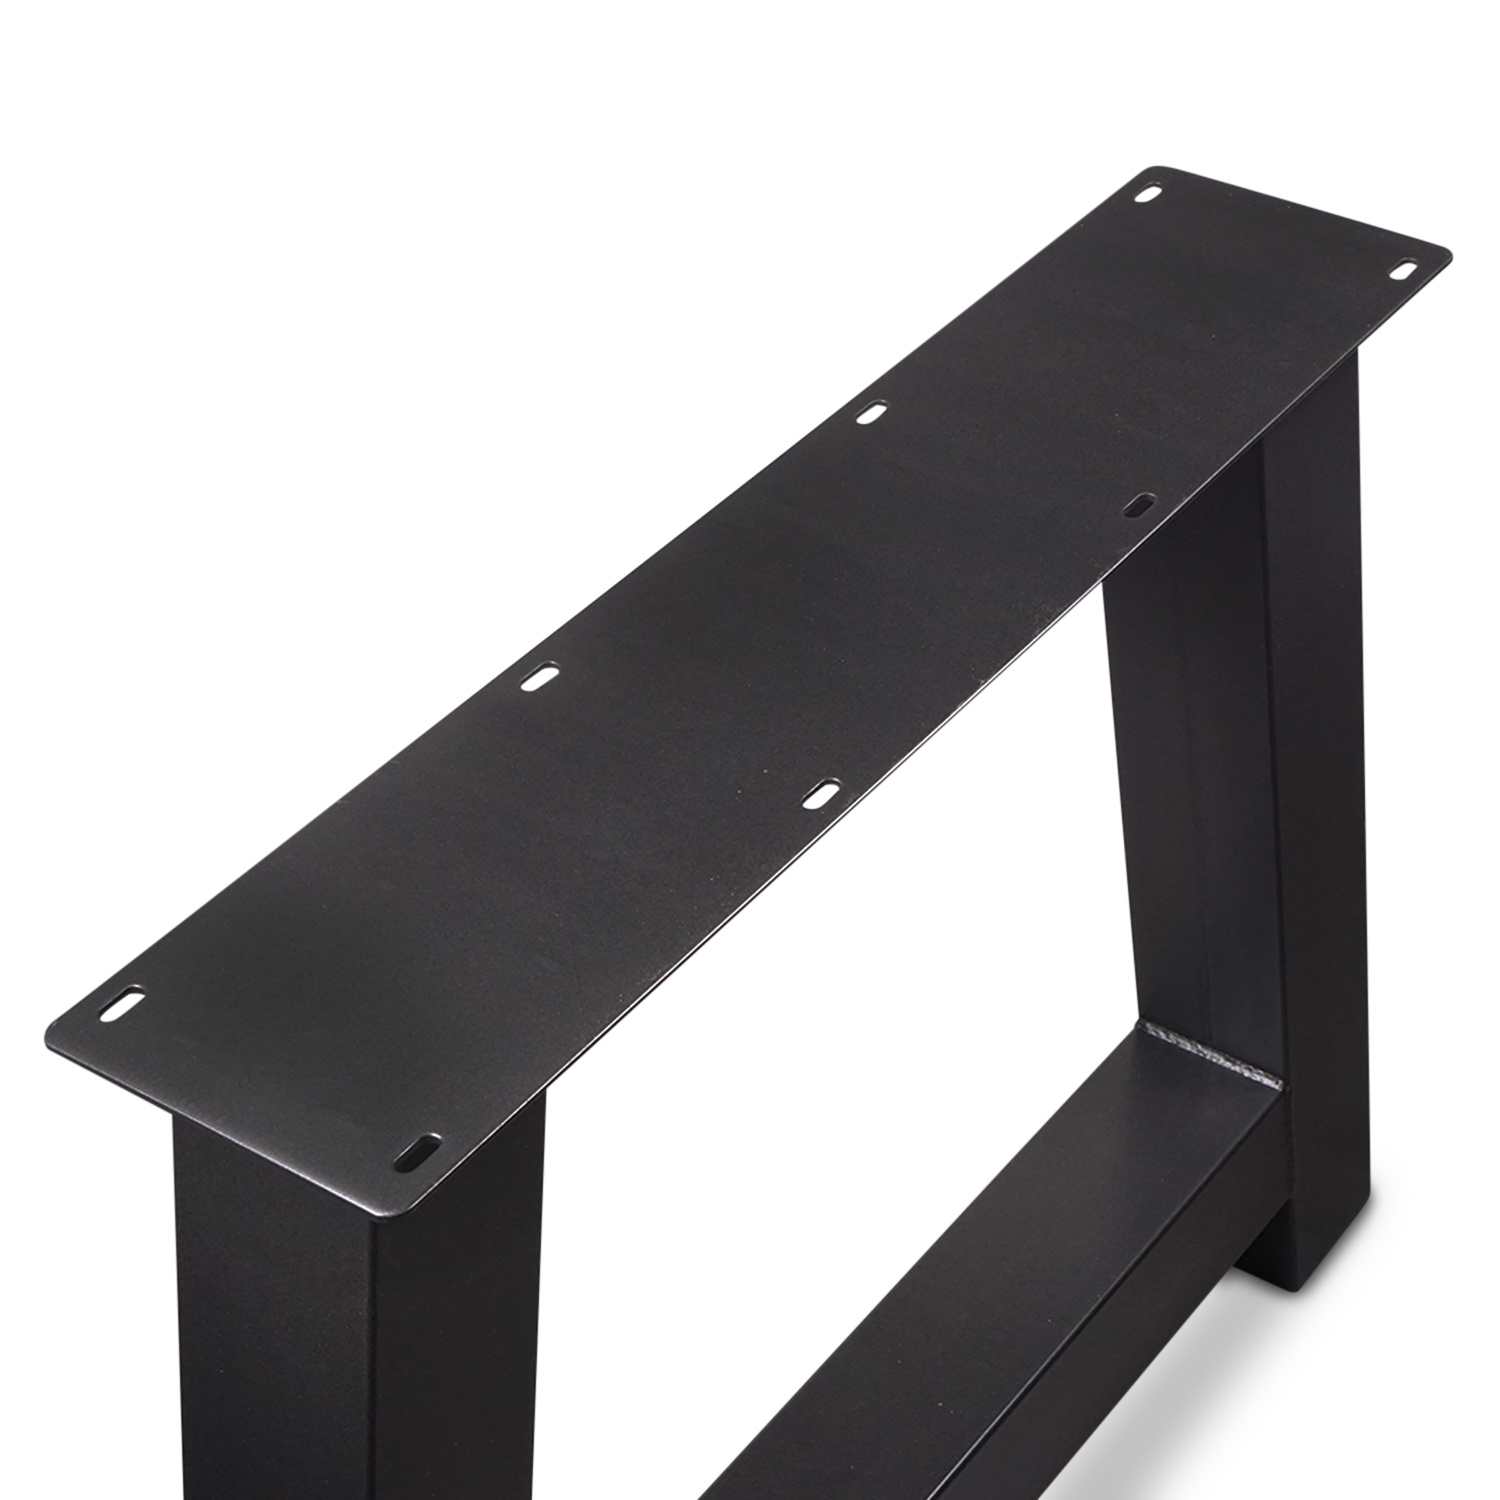  Tischbeine A Metall SET (2 Stück) - 10x10 cm - 78-95 cm breit - 72 cm hoch - A-form Tischkufen / Tischgestell beschichtet - Schwarz